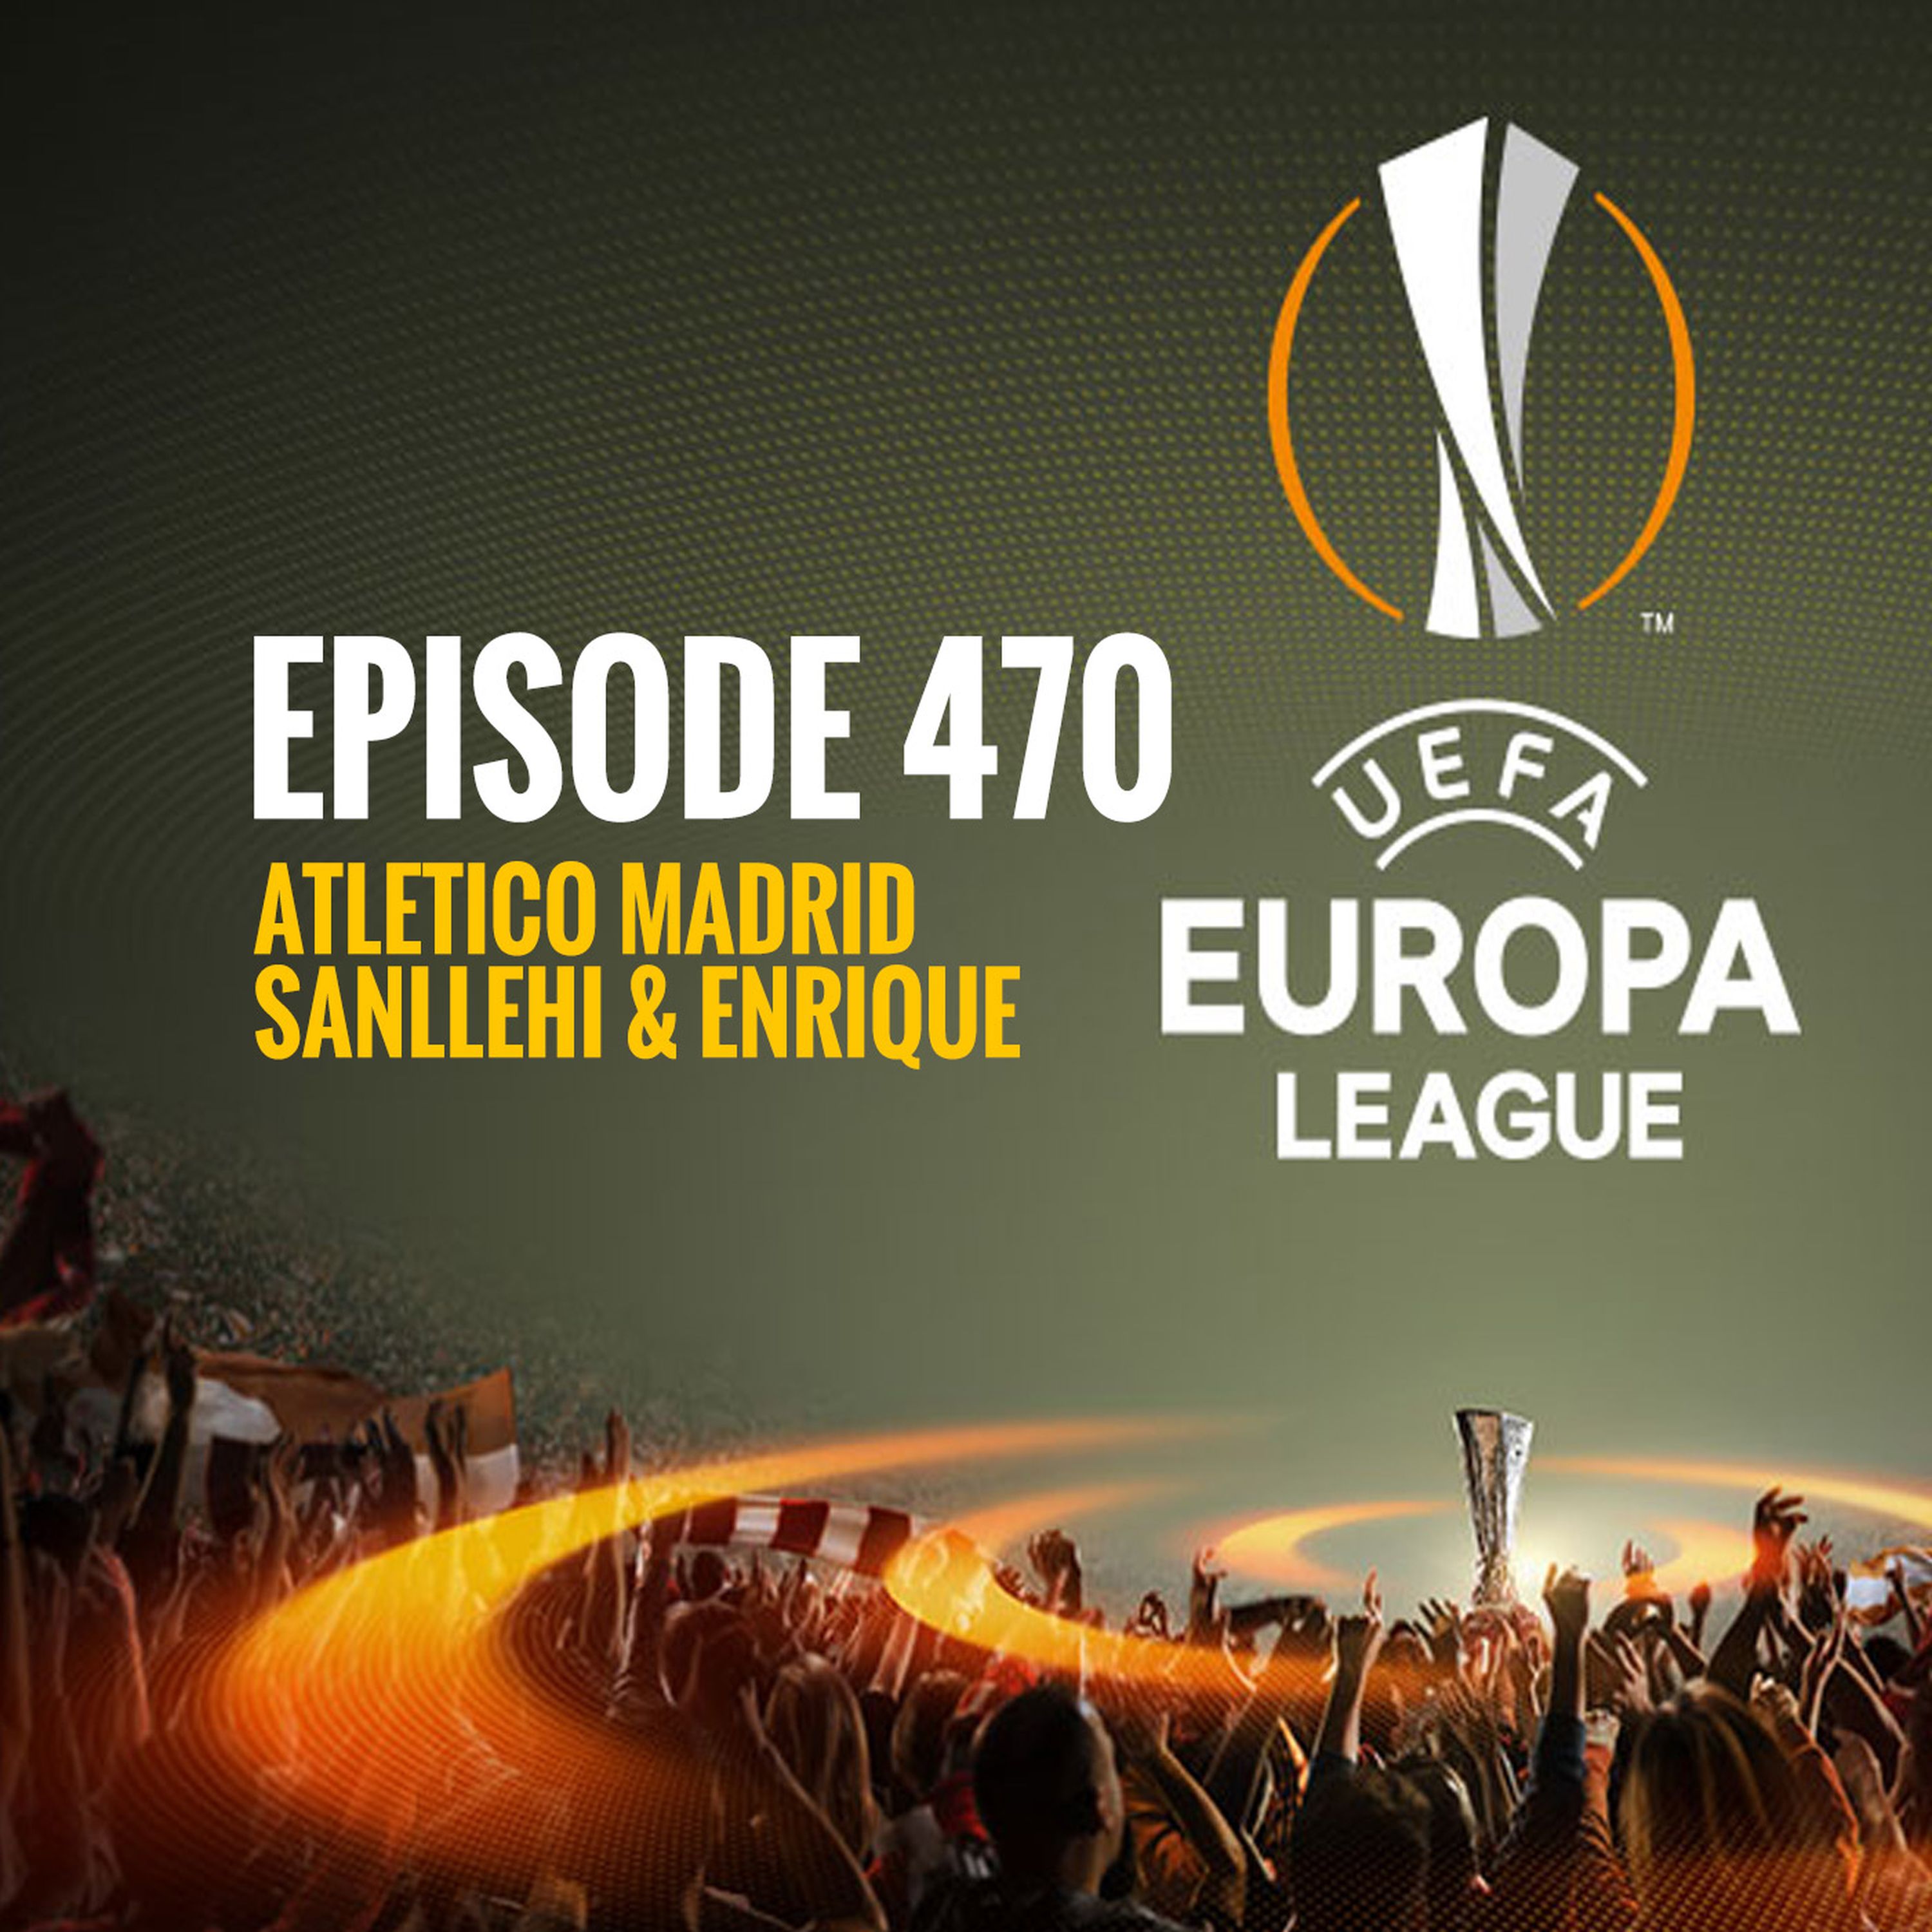 Episode 470 - Atletico Madrid, Sanllehi and Enrique